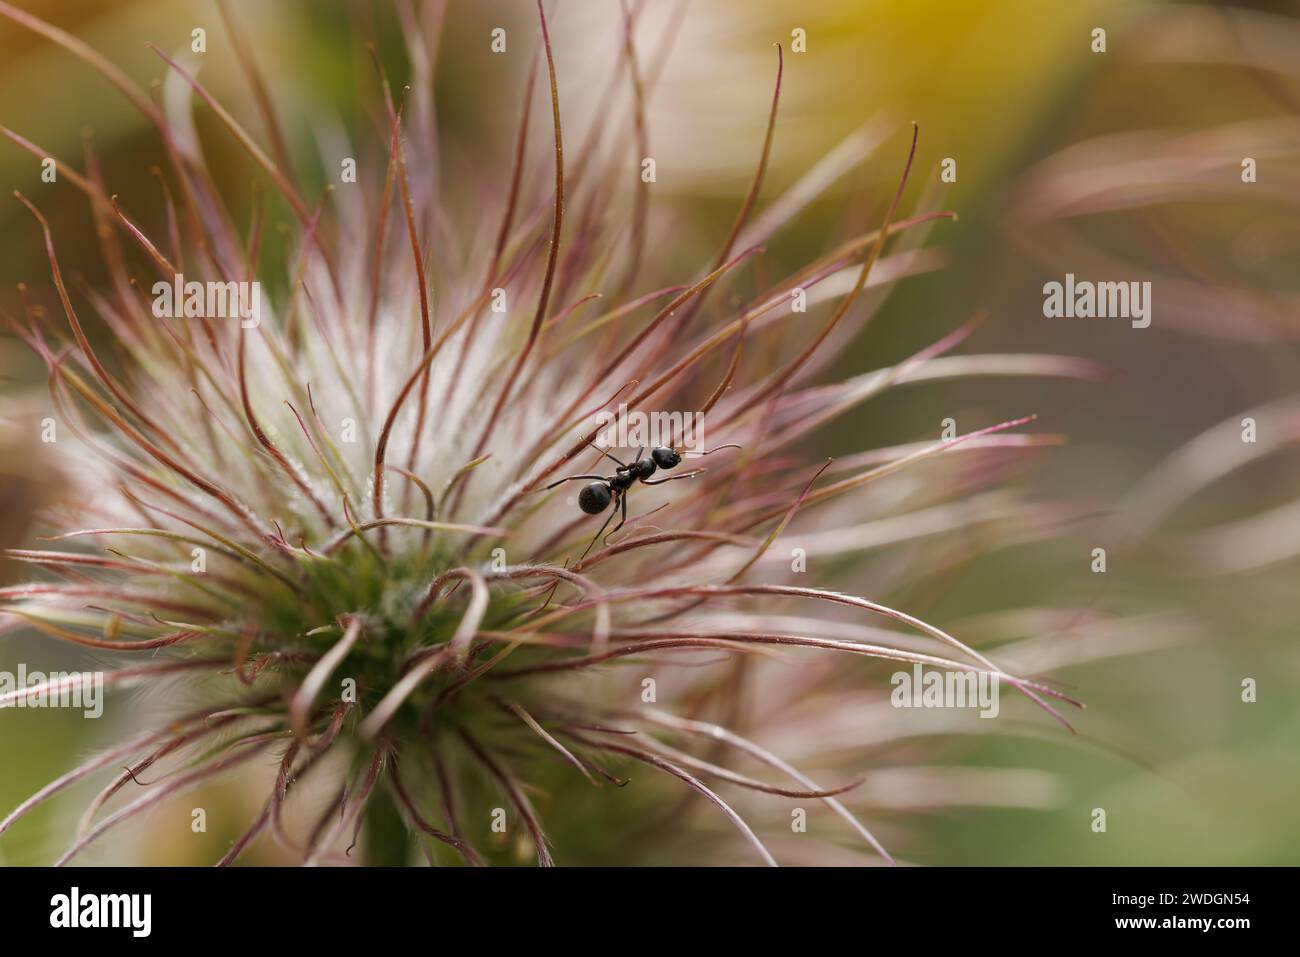 Immagine macro di una formica sulla testa di semina di un Pasque Flower. Foto Stock